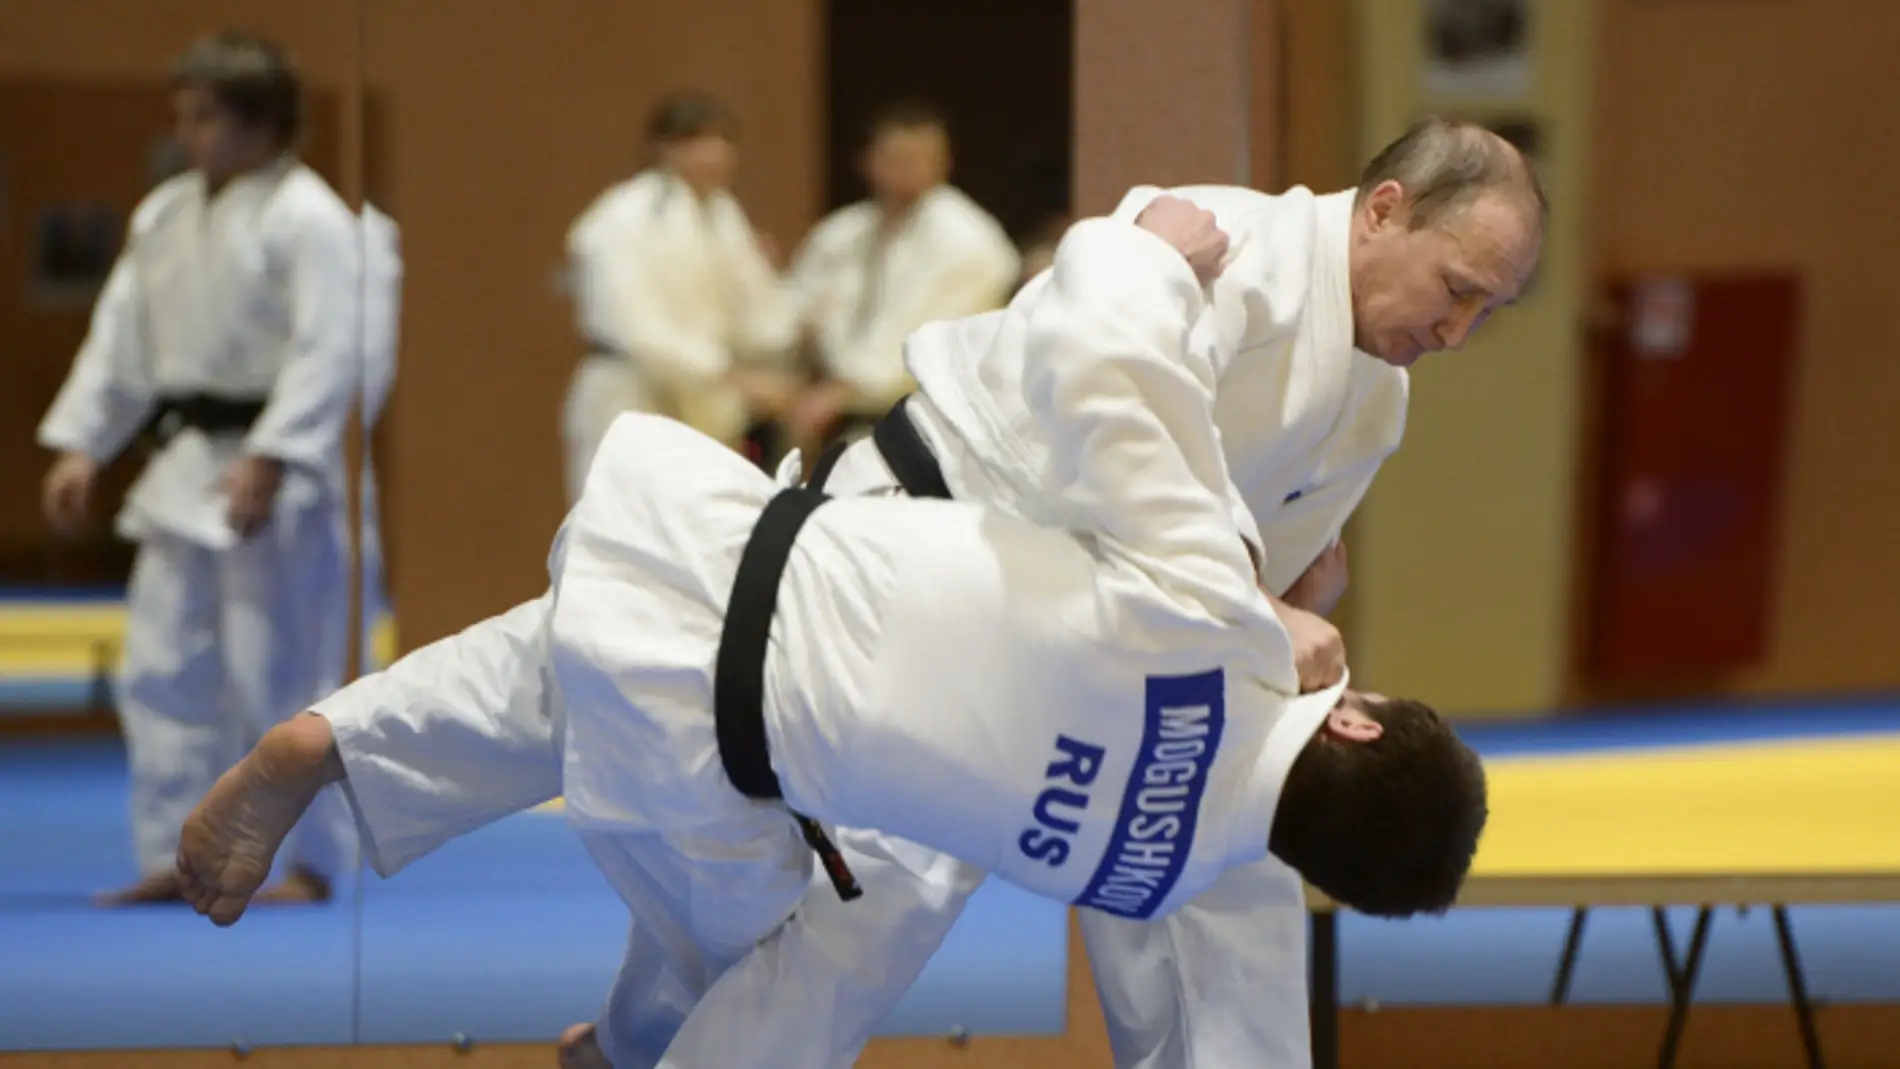 El presidente ruso Vladimir Putin derriba a un oponente en una sesión de judo.